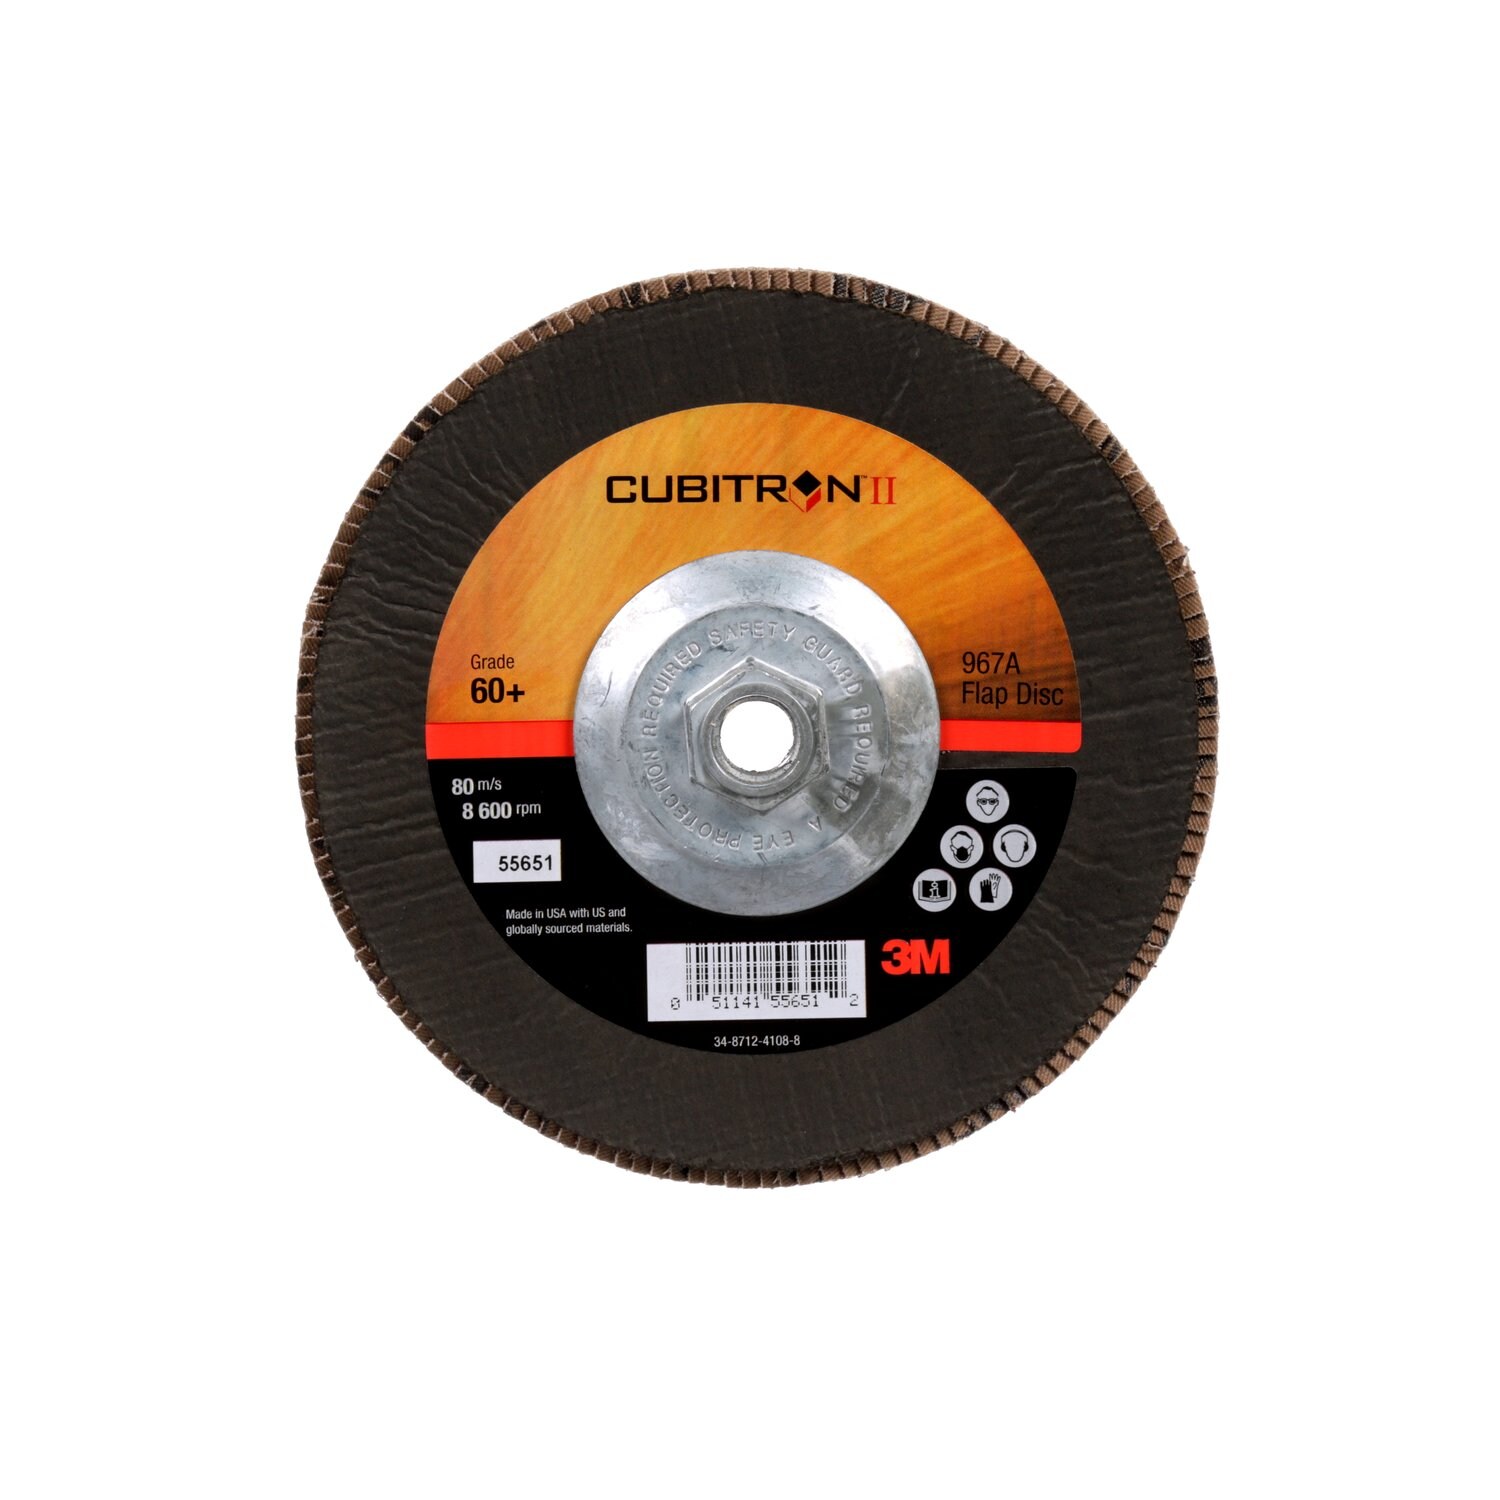 7010363309 - 3M Cubitron II Flap Disc 967A, 60+, T29 Quick Change, 7 in x 5/8"-11,
Giant, 5 ea/Case